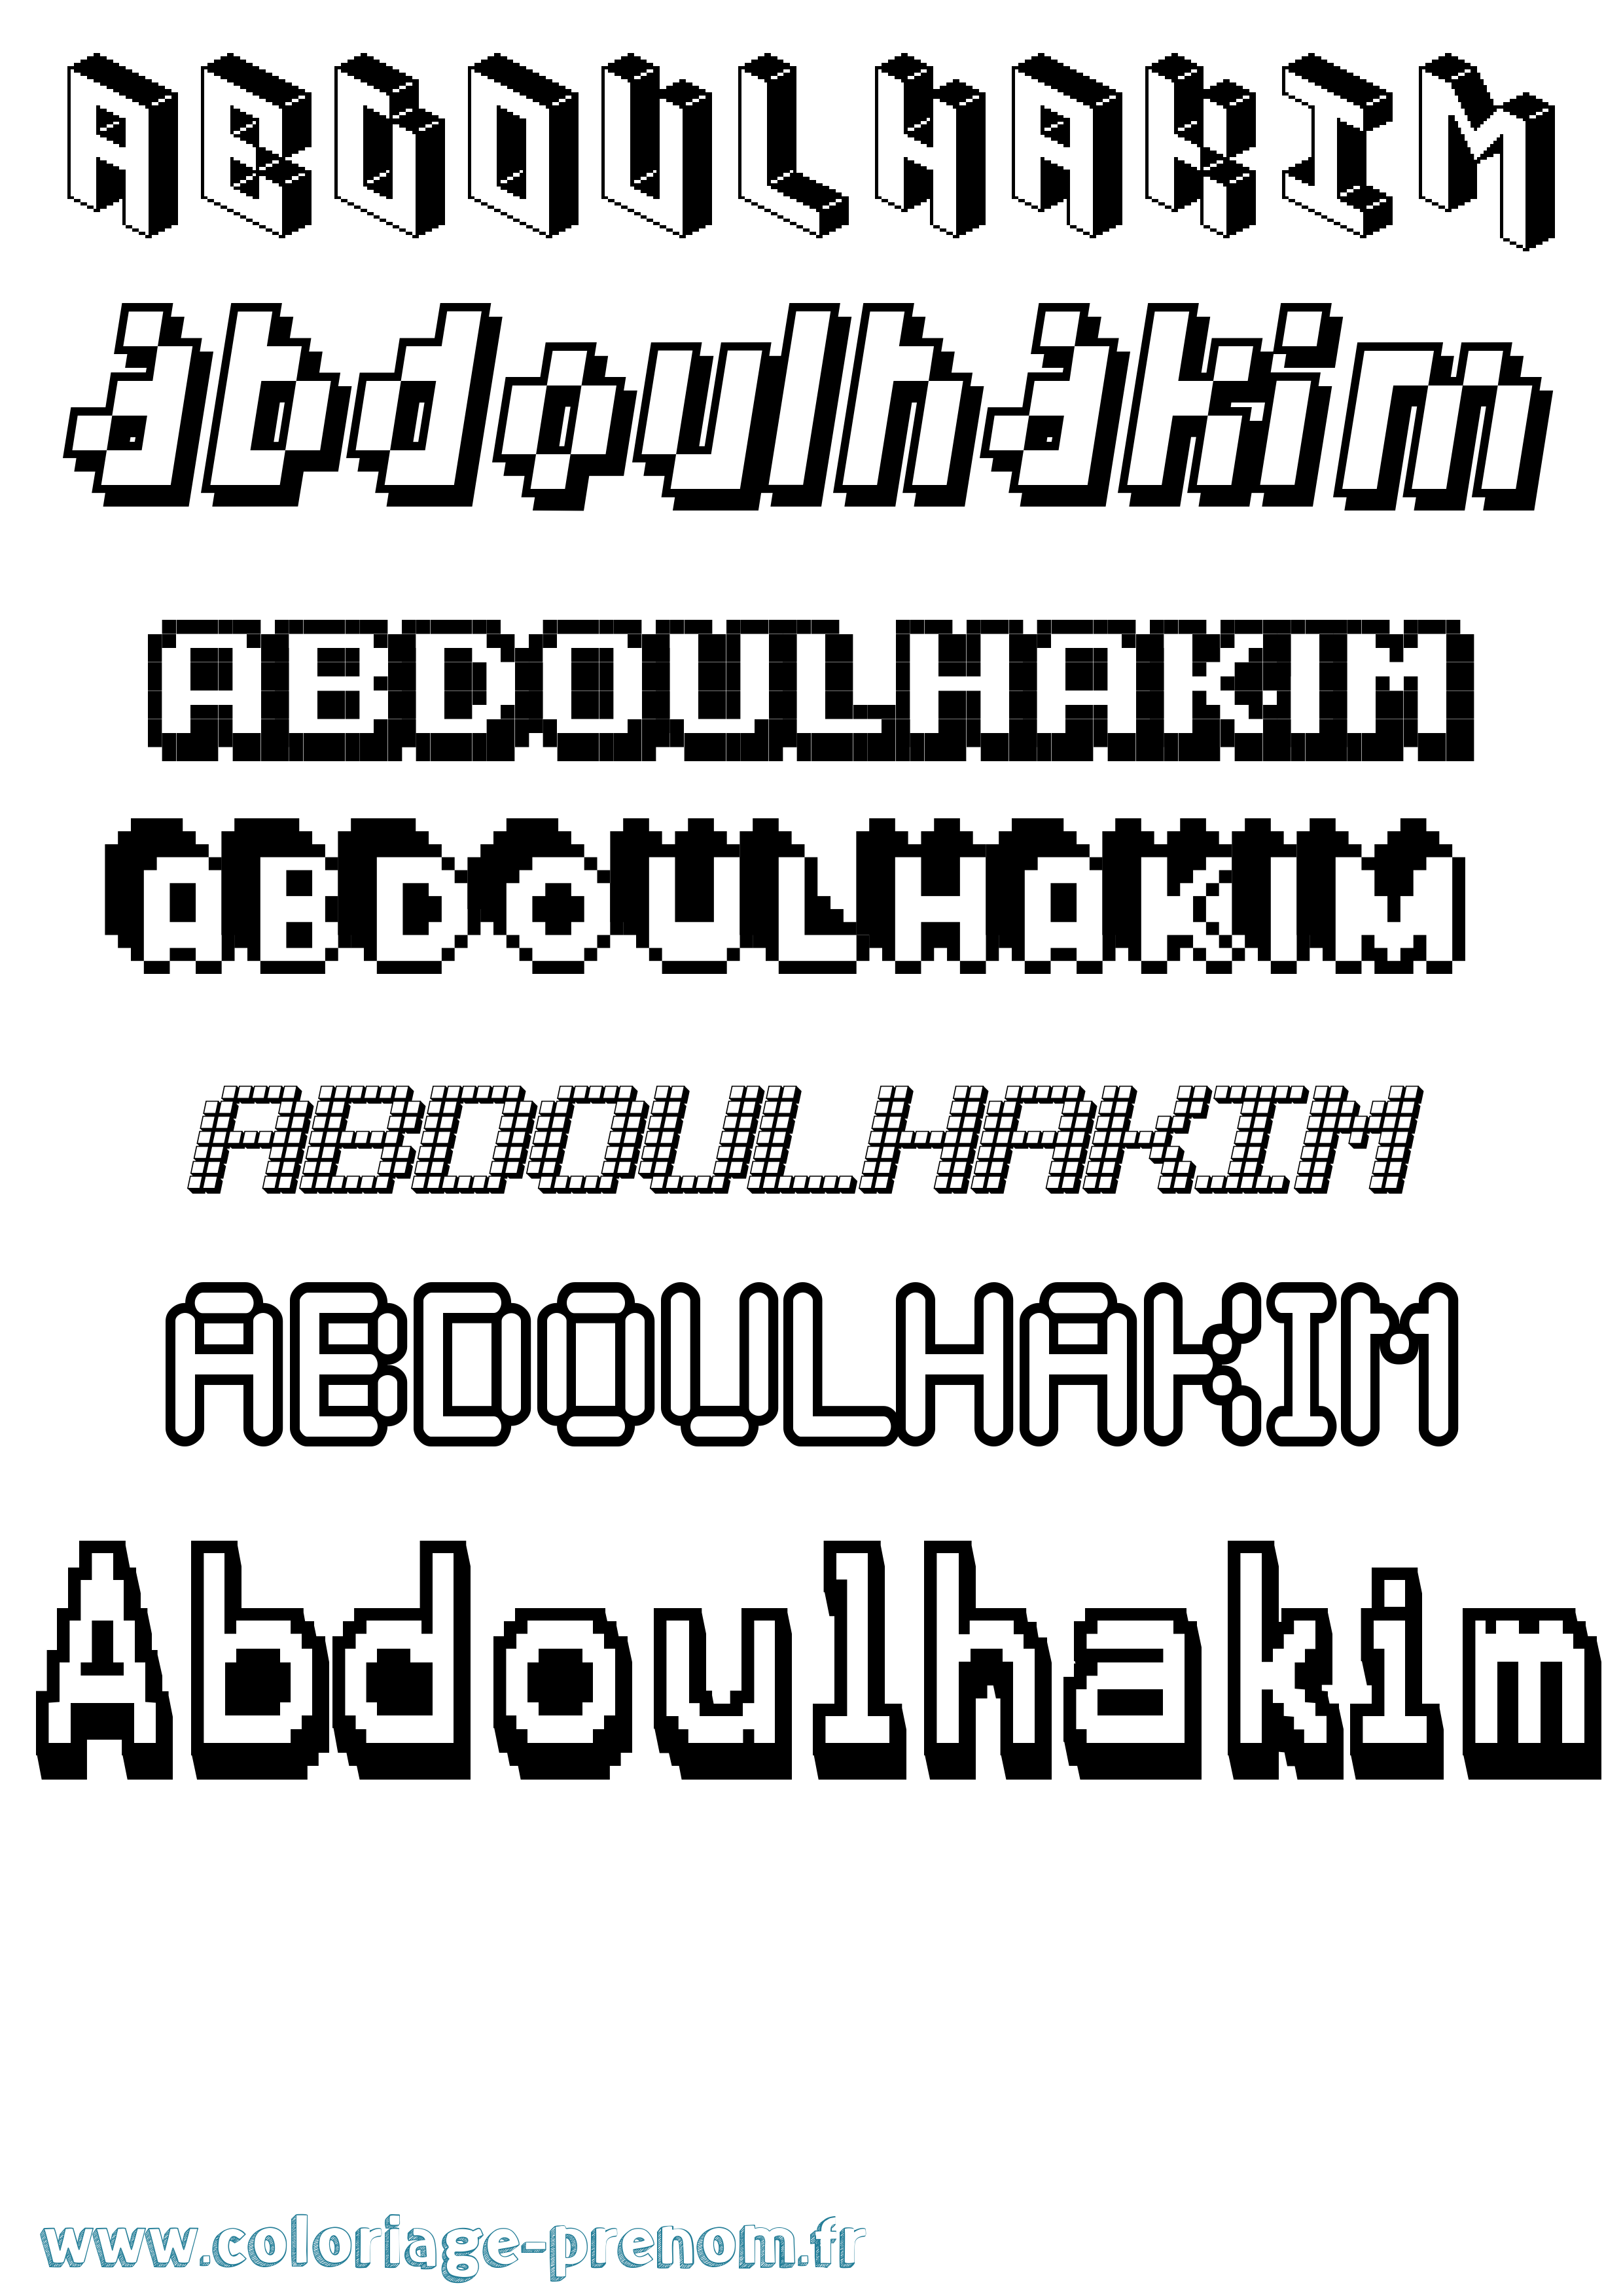 Coloriage prénom Abdoulhakim Pixel